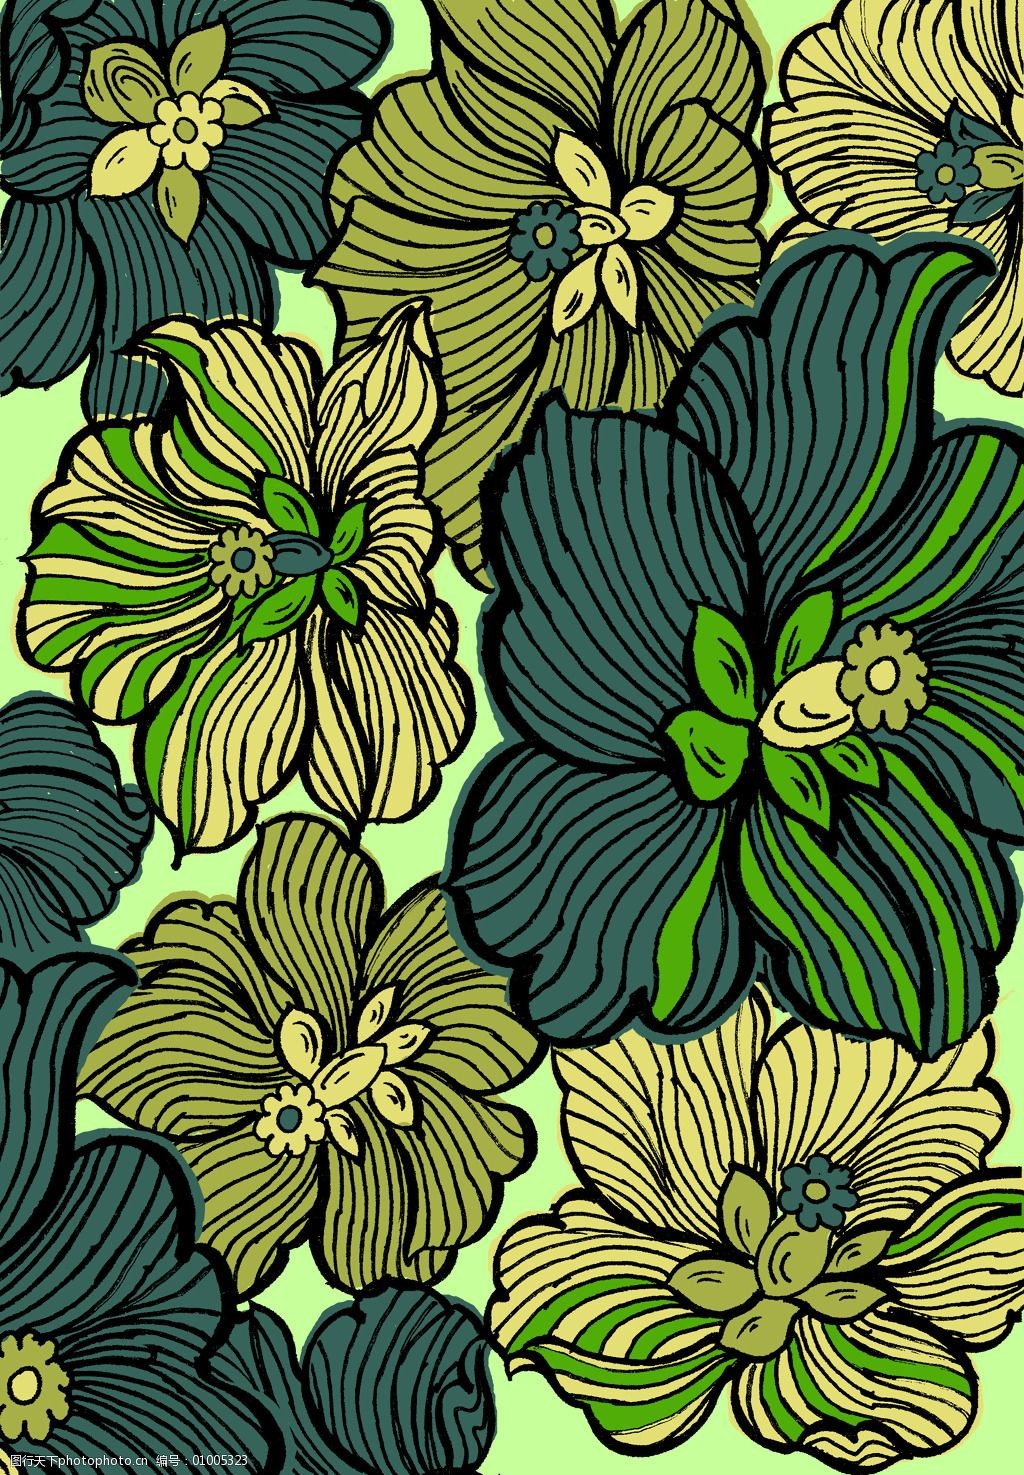 植物免费下载 服装图案 花卉 免费下载 植物 面料图库 服装设计